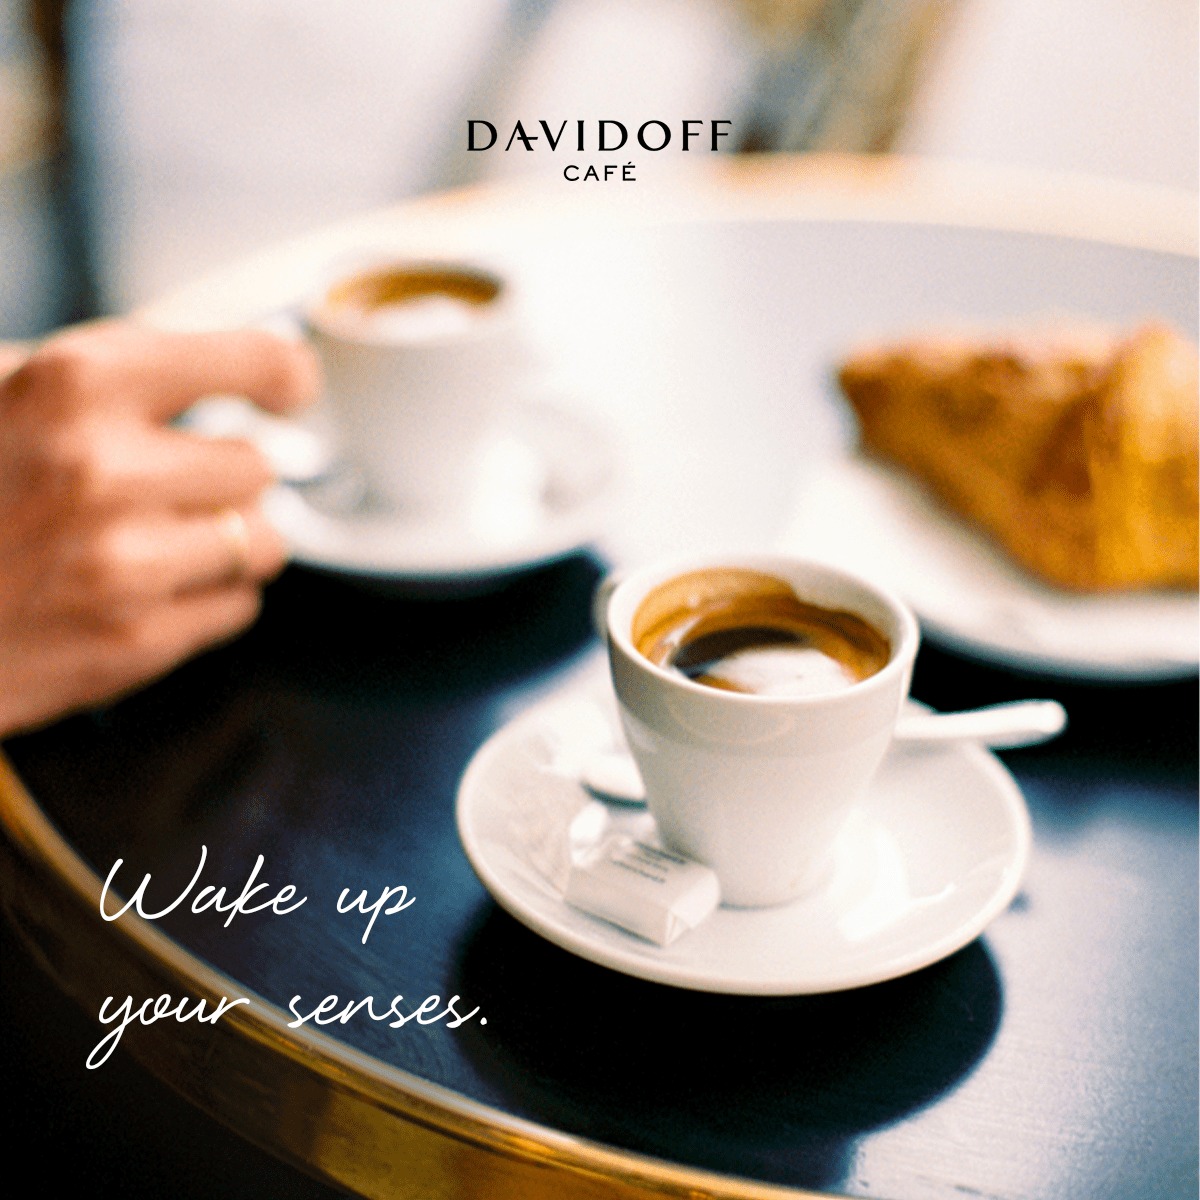 BẮT ĐẦU NGÀY MỚI NHIỀU NĂNG LƯỢNG BẰNG DAVIDOFF CAFÉ